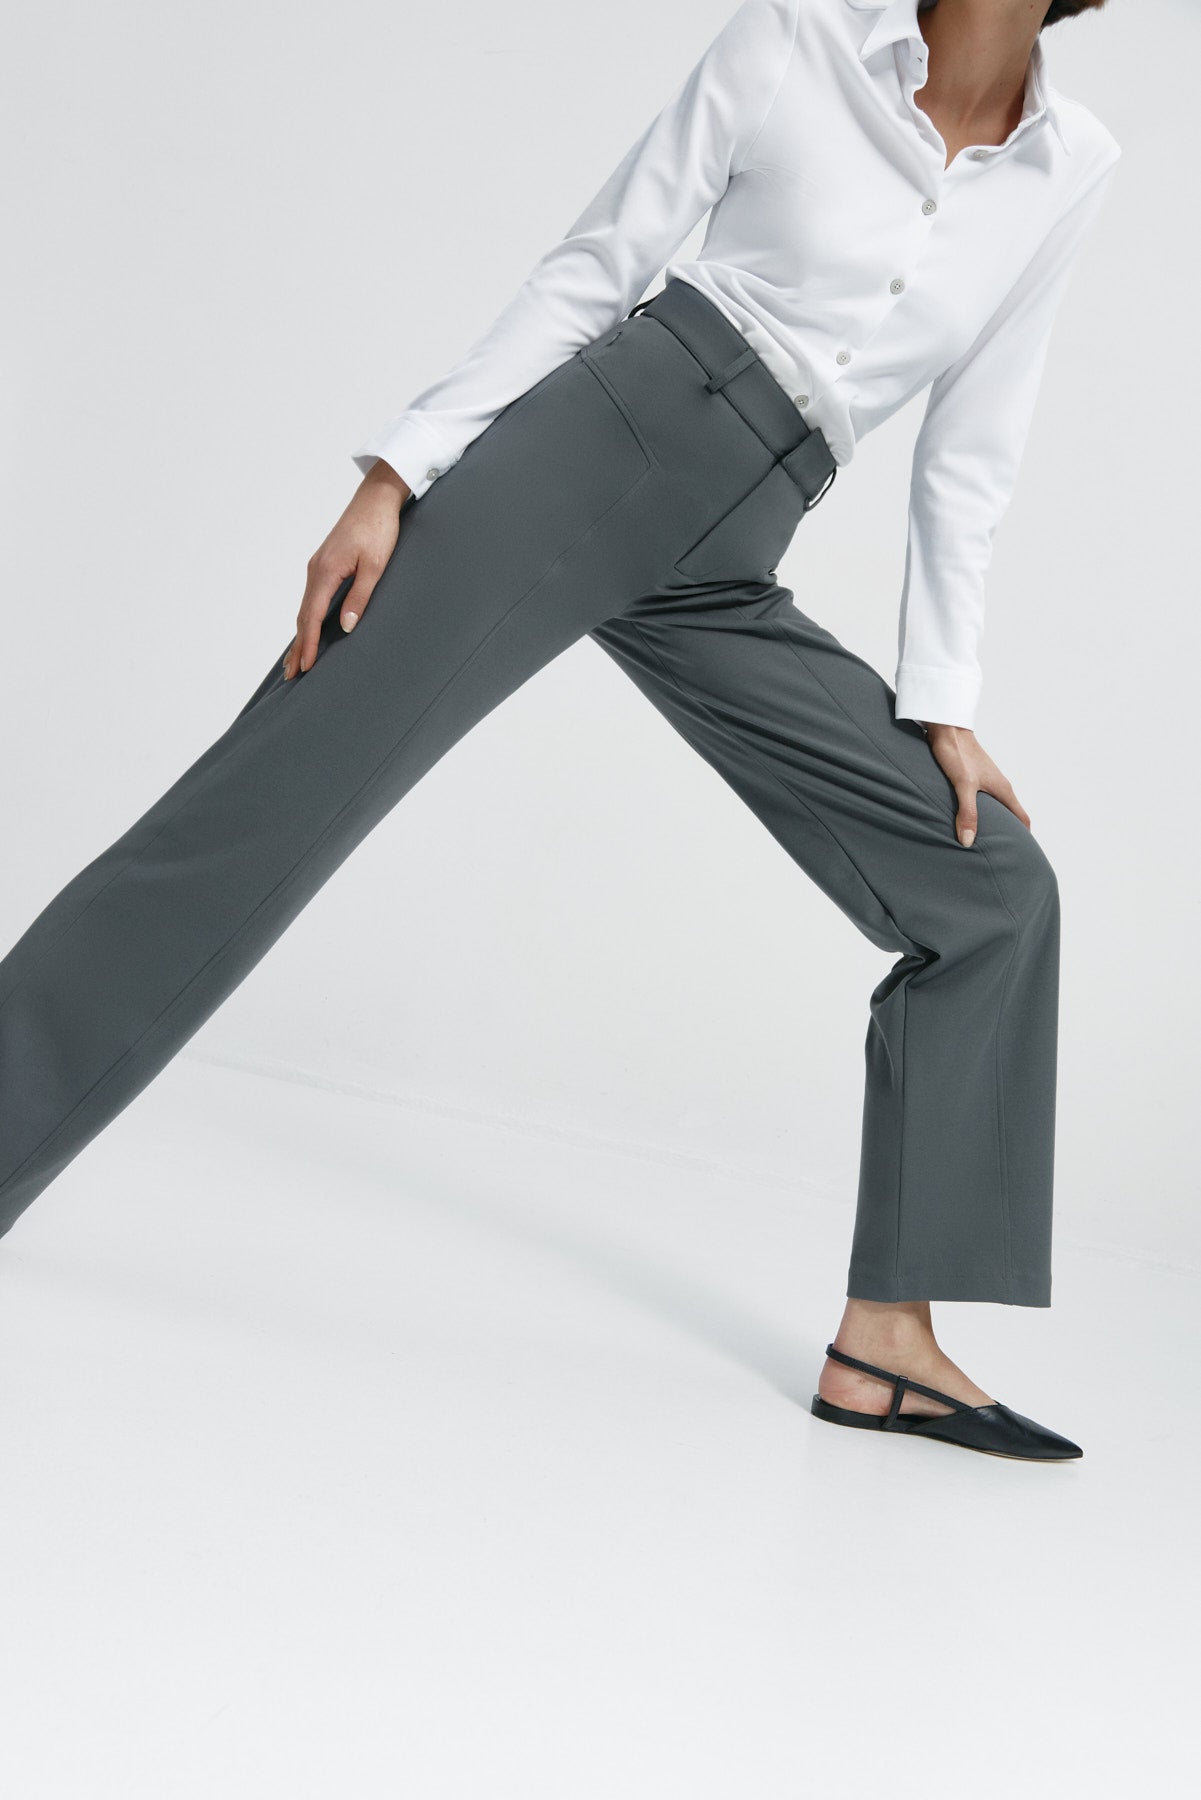 Pantalón de mujer gris de Sepiia, cómodo y resistente, ideal para cualquier ocasión. Foto flexibilidad